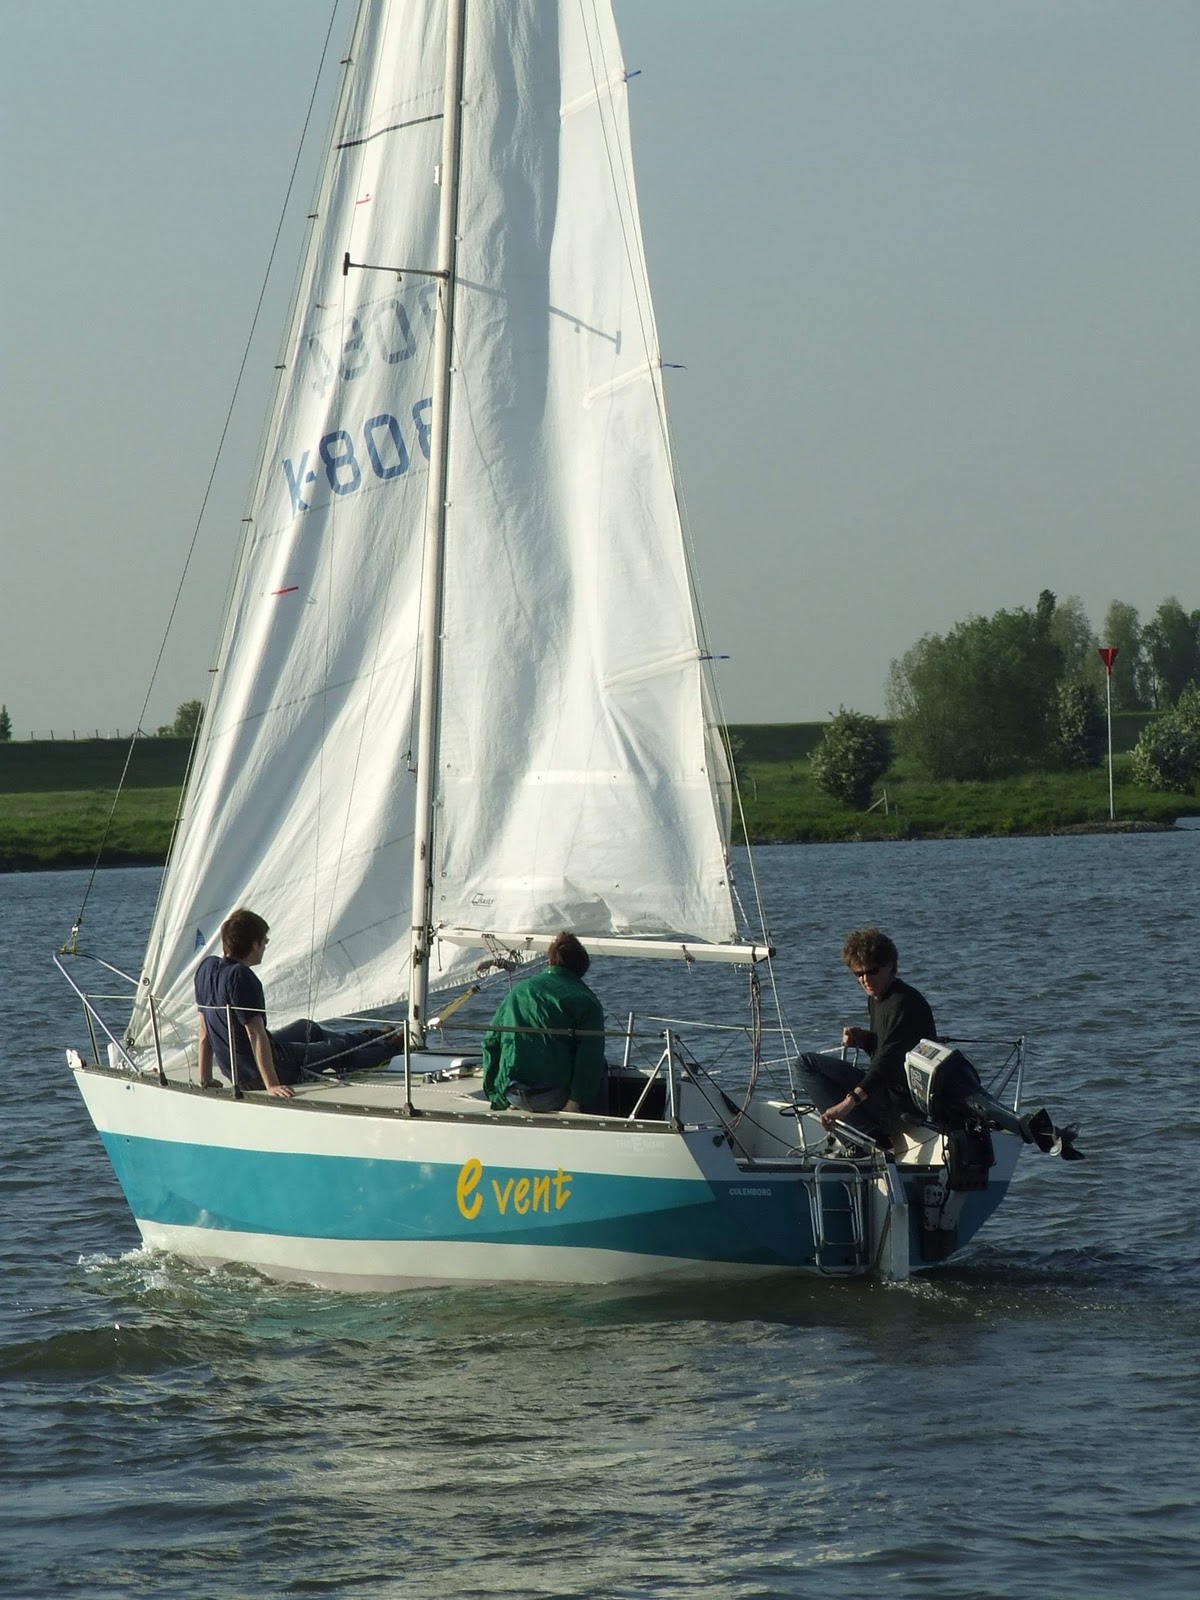 i550 Sportboat Vlot: i550 Sportboat Building in Holland